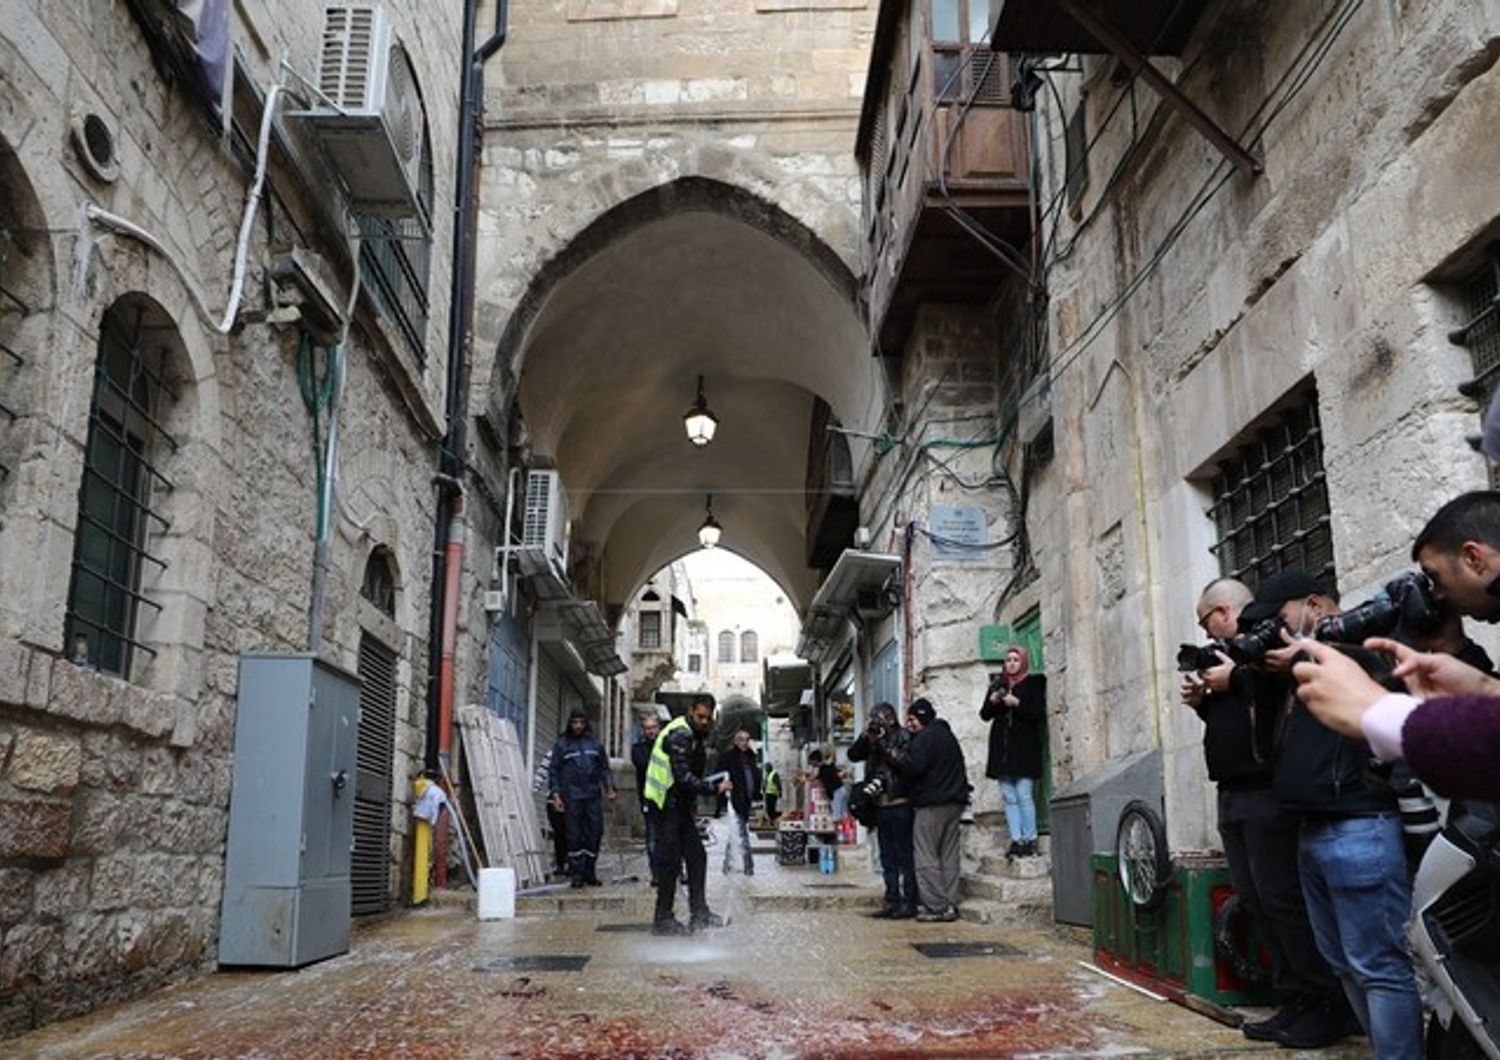 Gerusalemme, si ripulisce la strada dopo un attentato rivendicato da Hamas